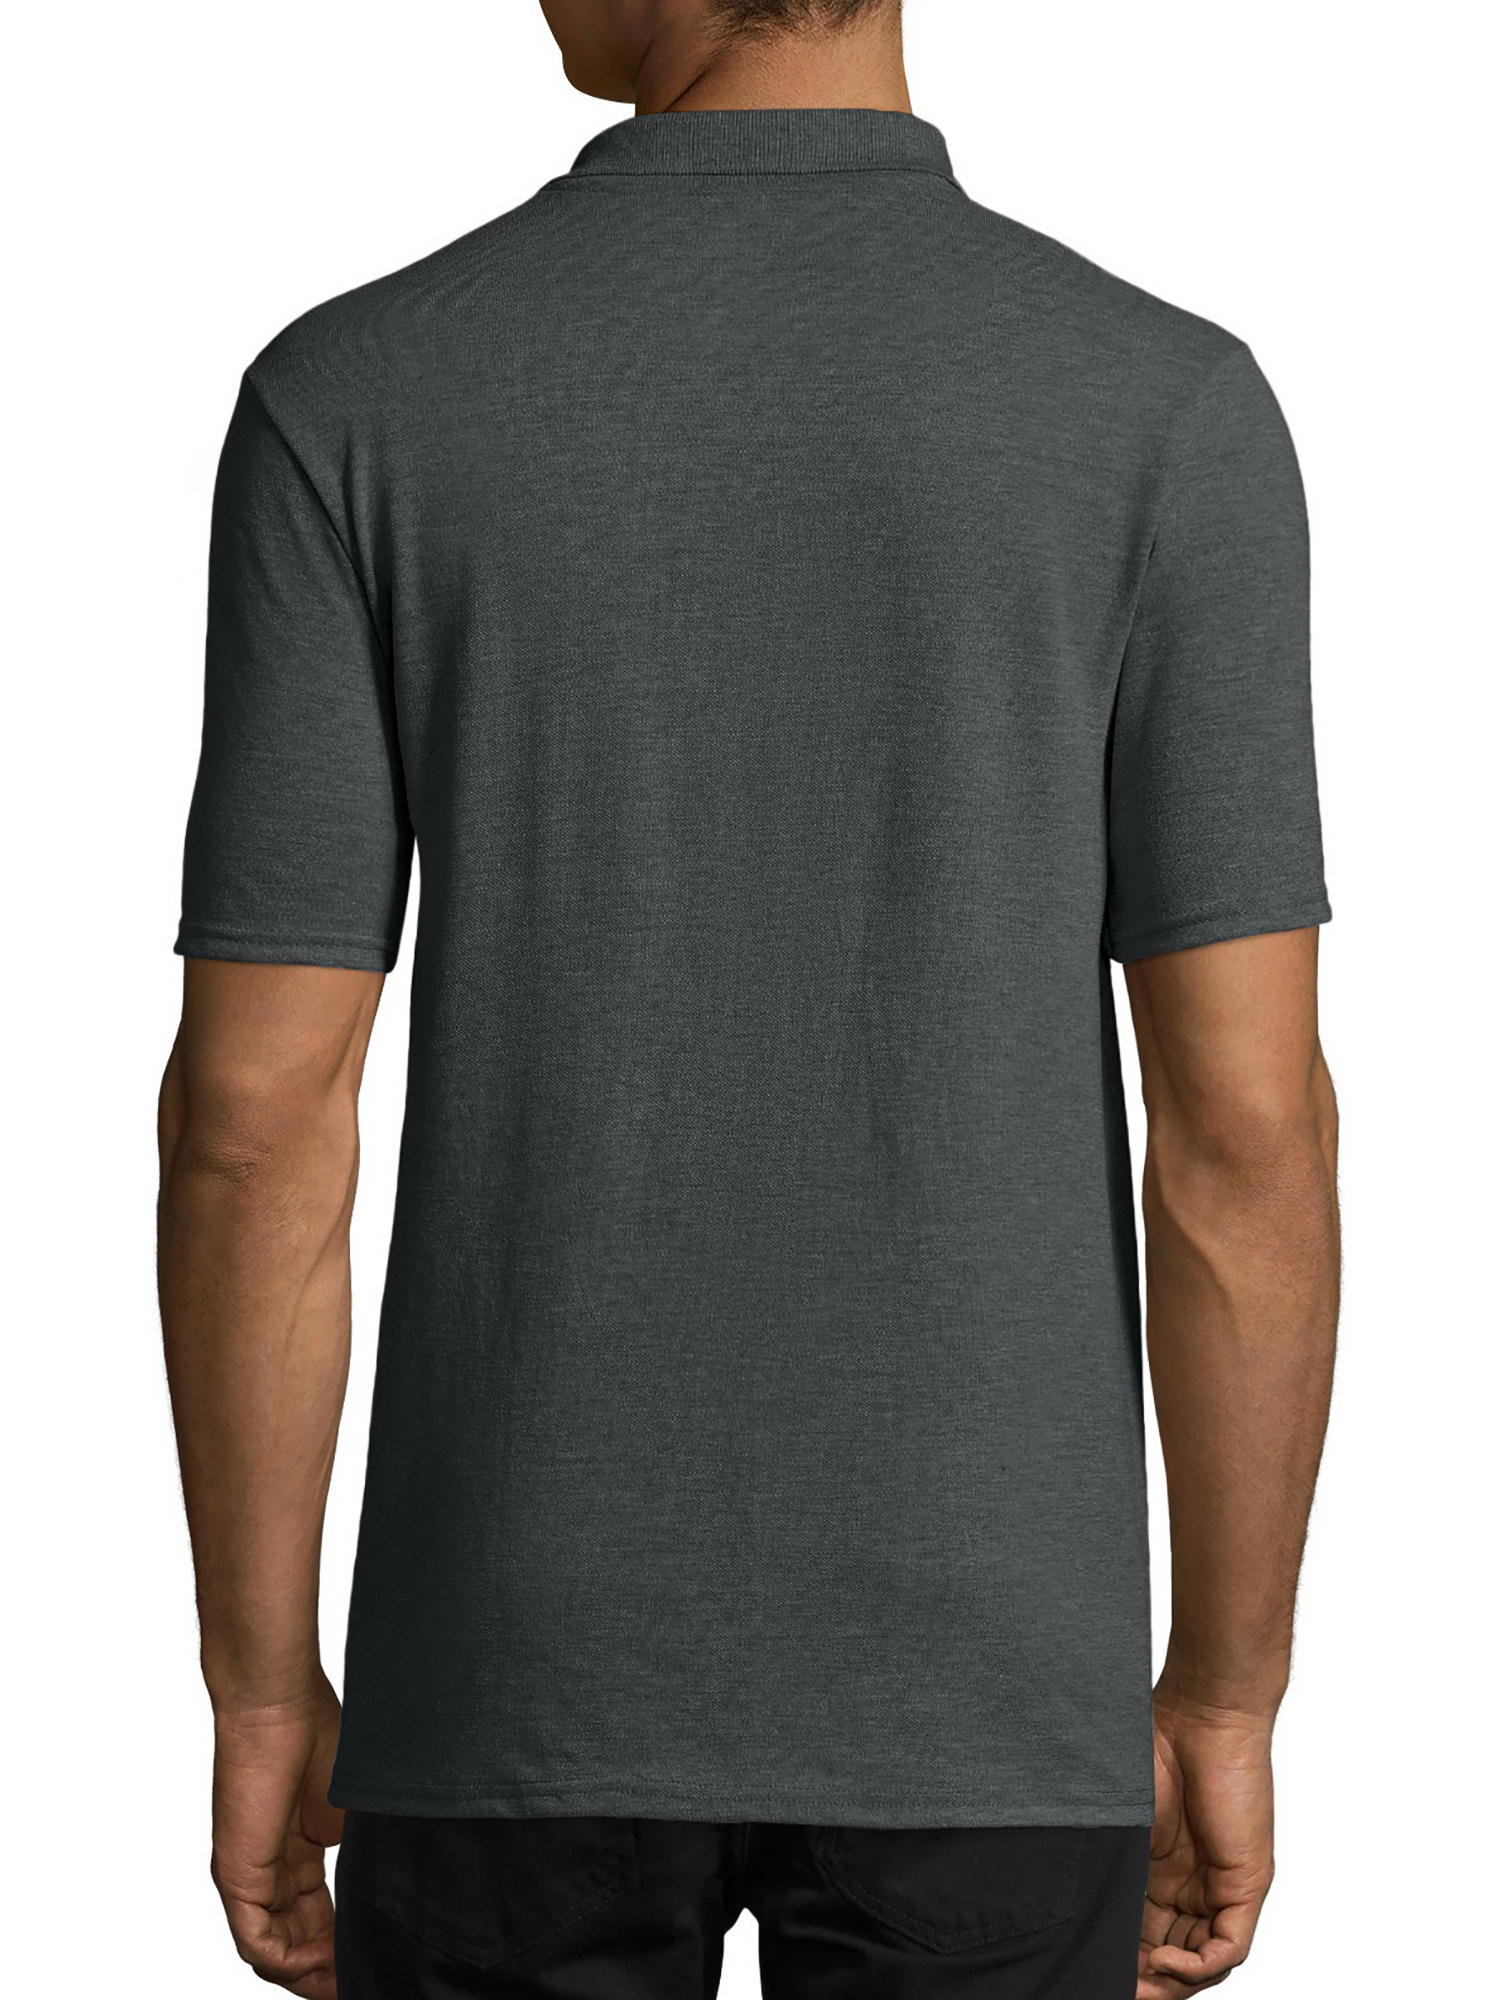 Hanes Men's X-Temp Short Sleeve Pique Polo Shirt - Walmart.com